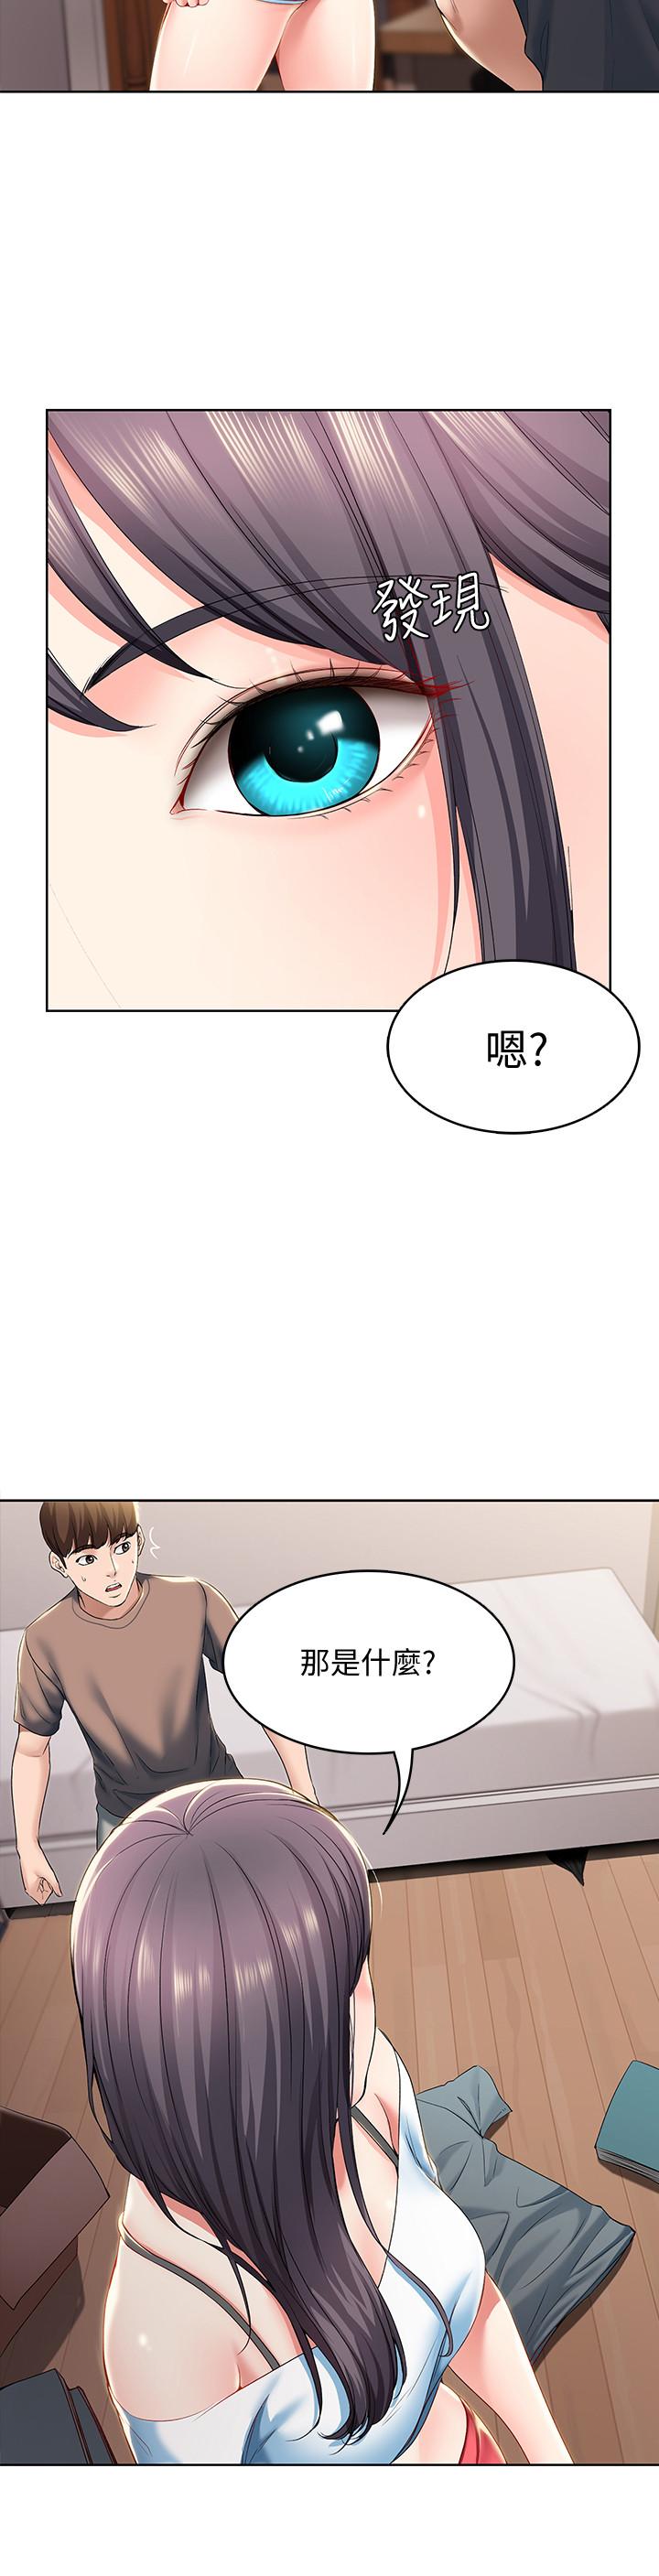 韩国污漫画 寄宿日記 第28话-充满诱惑的家 31